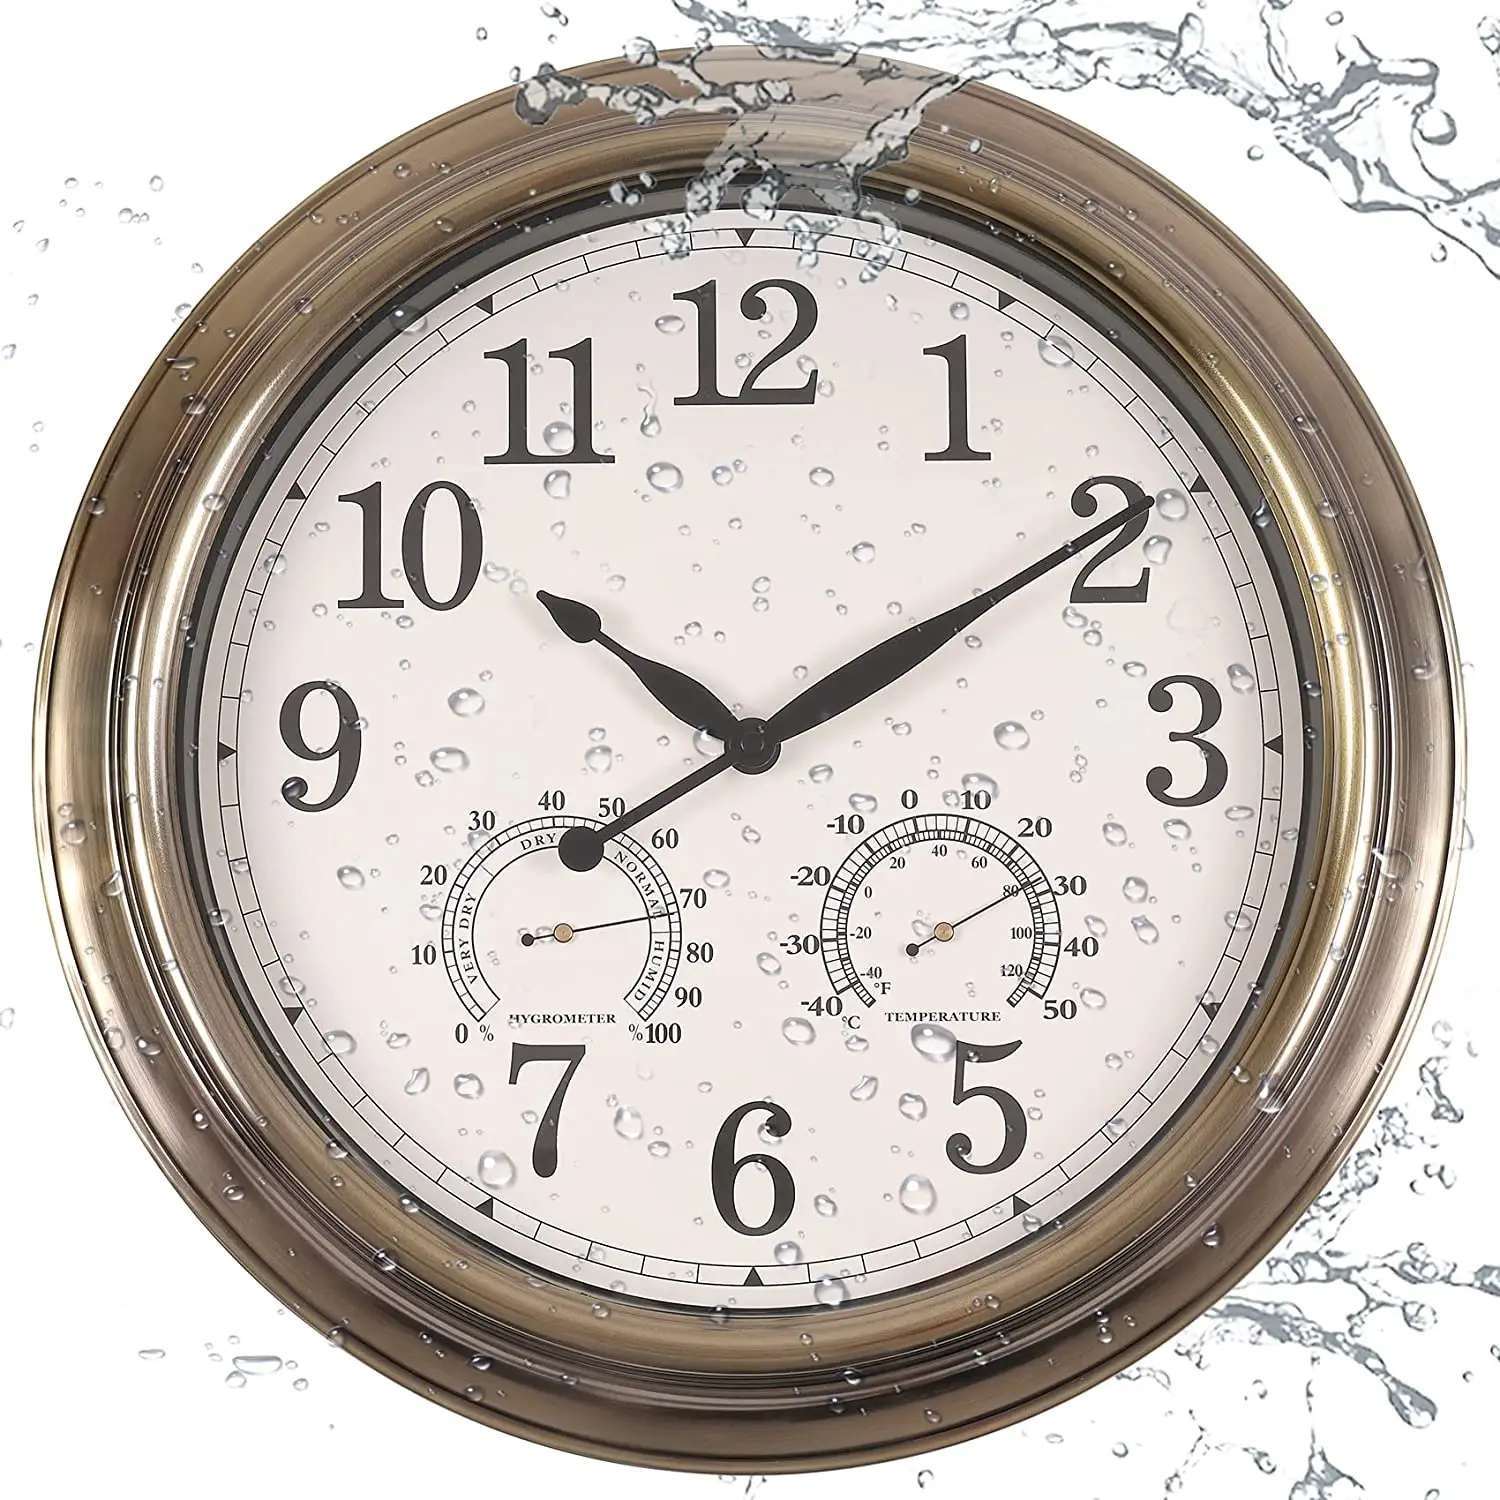 Grande orologio da parete in bronzo antico retrò in metallo rotondo silenzioso vintage a prova di acqua all'aperto orologio da parete con temperatura e umidità